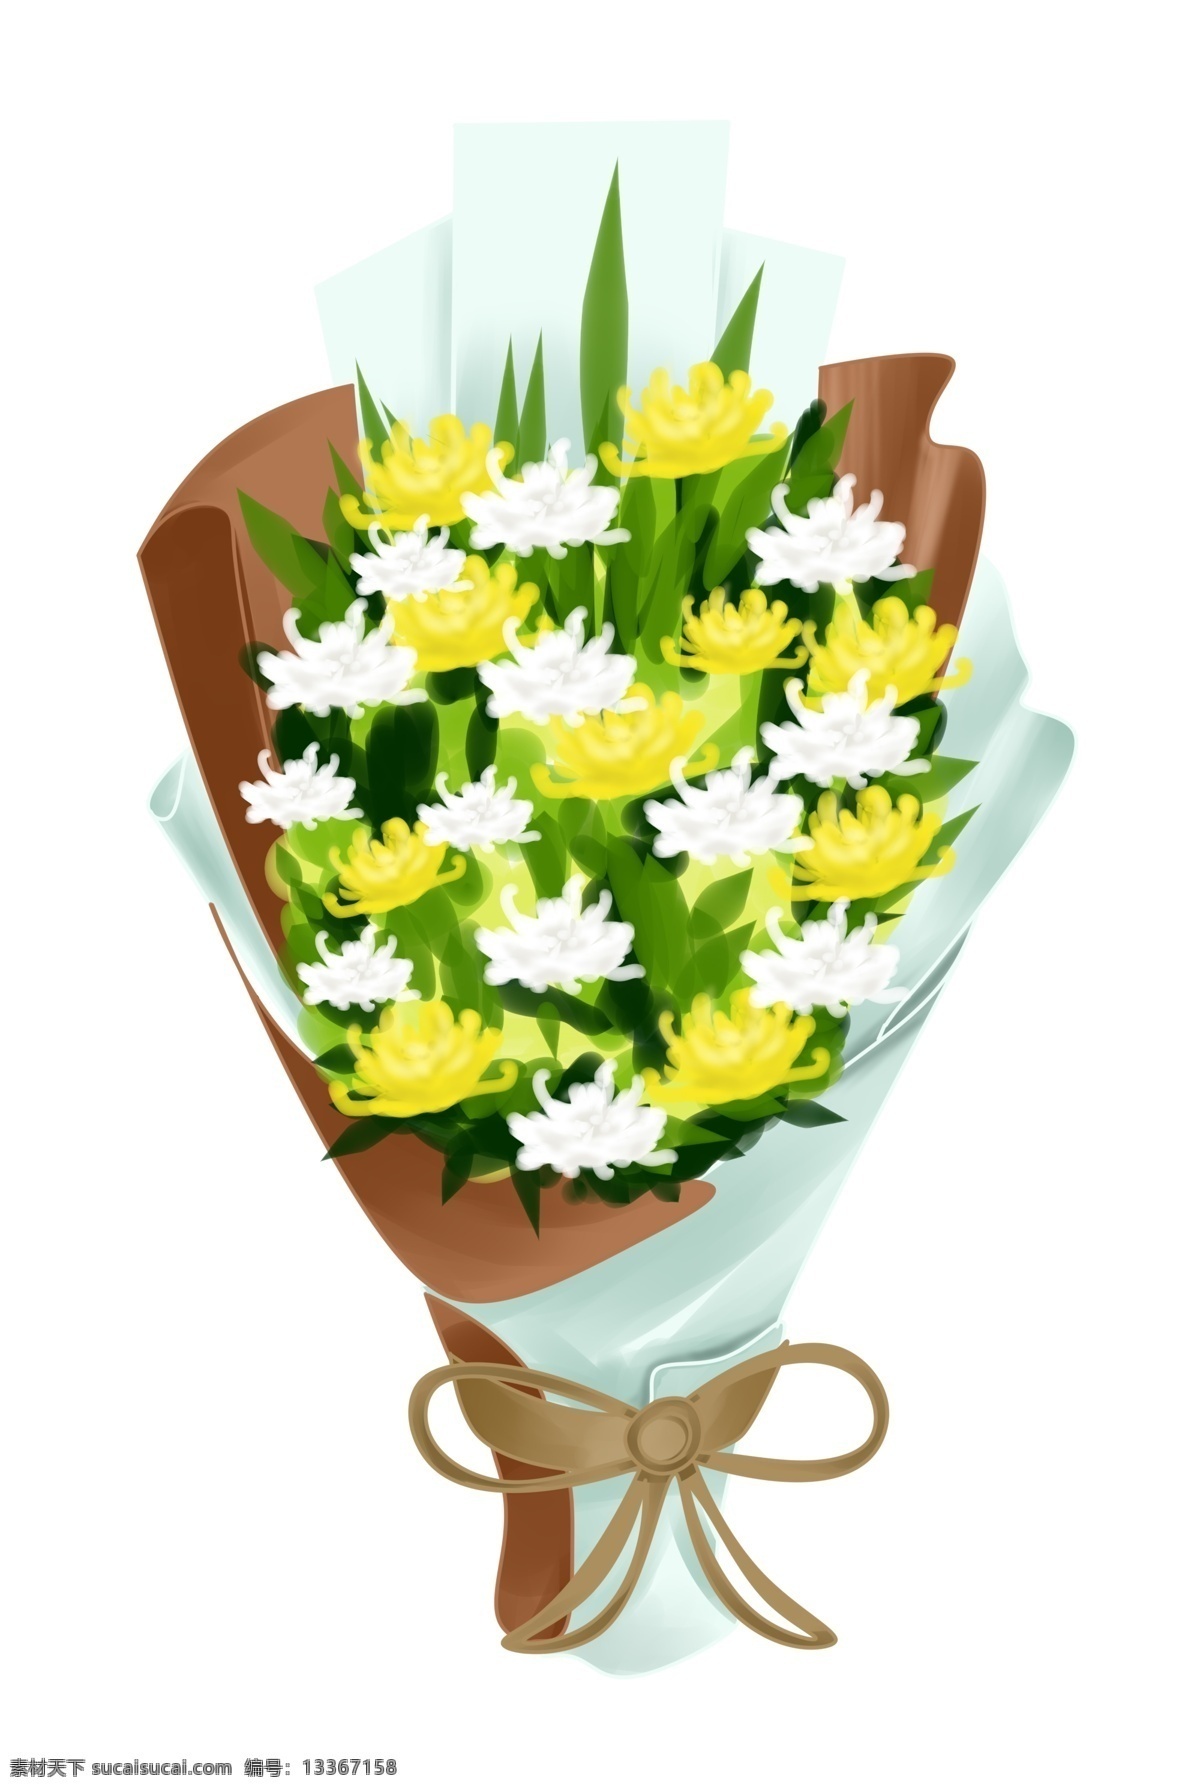 清明节 花束 装饰 插画 清明节花束 花朵 黄色花朵 白色花朵 花卉 植物 鲜花 祭拜 传统习俗 节日装饰